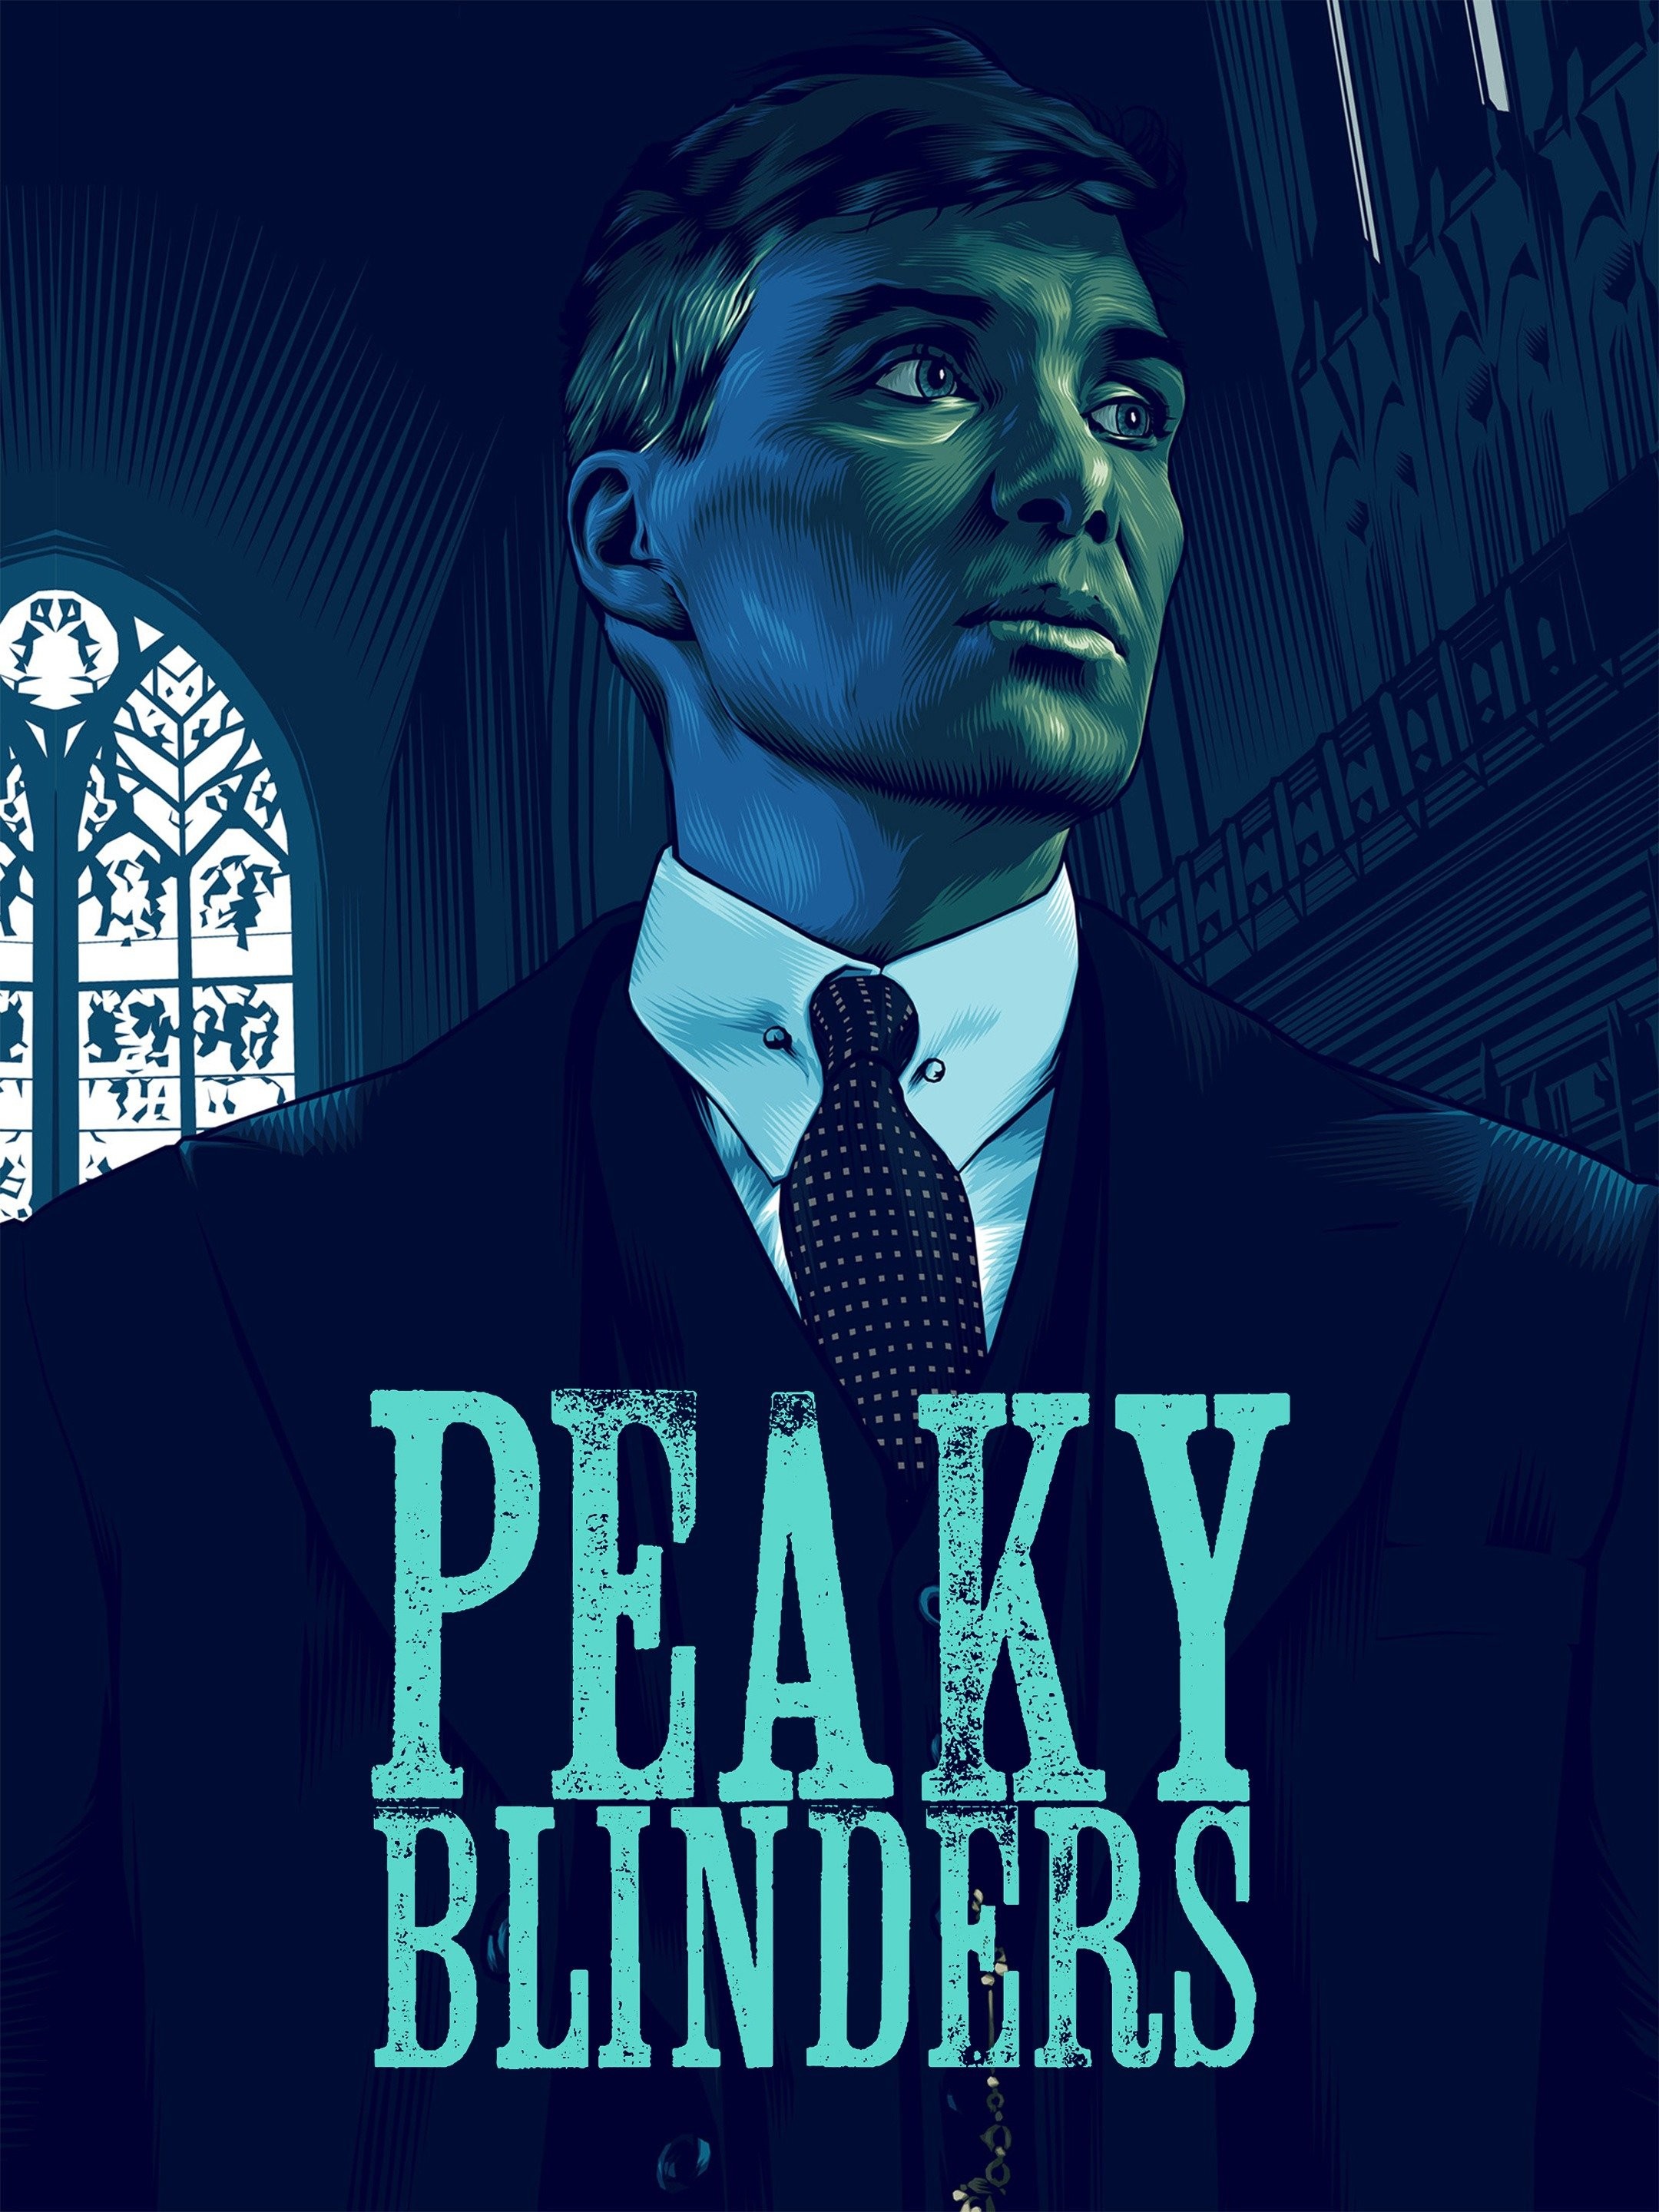 Peaky Blinders Season 6 News, Cast, Premiere Date